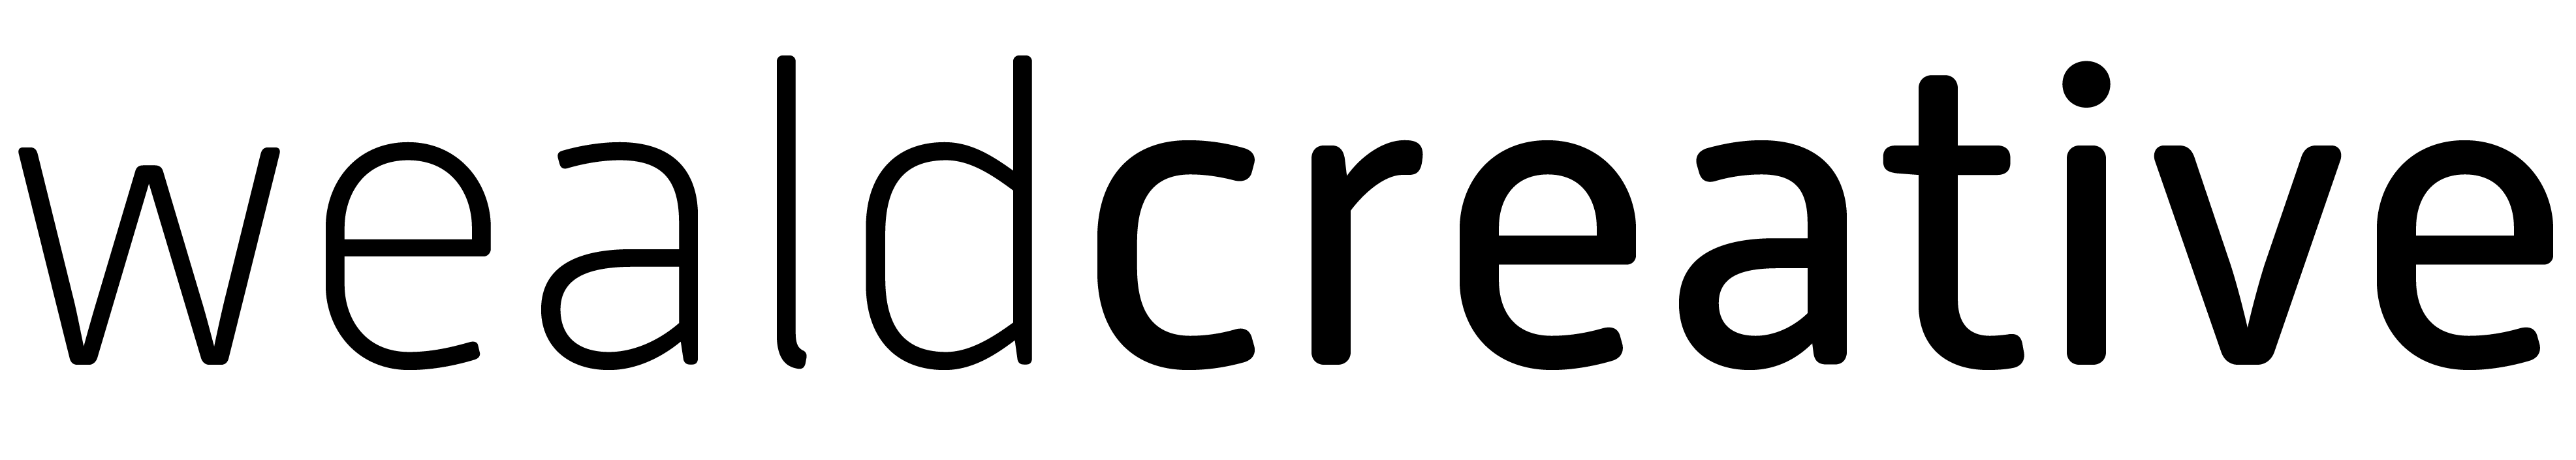 Weald Creative logo